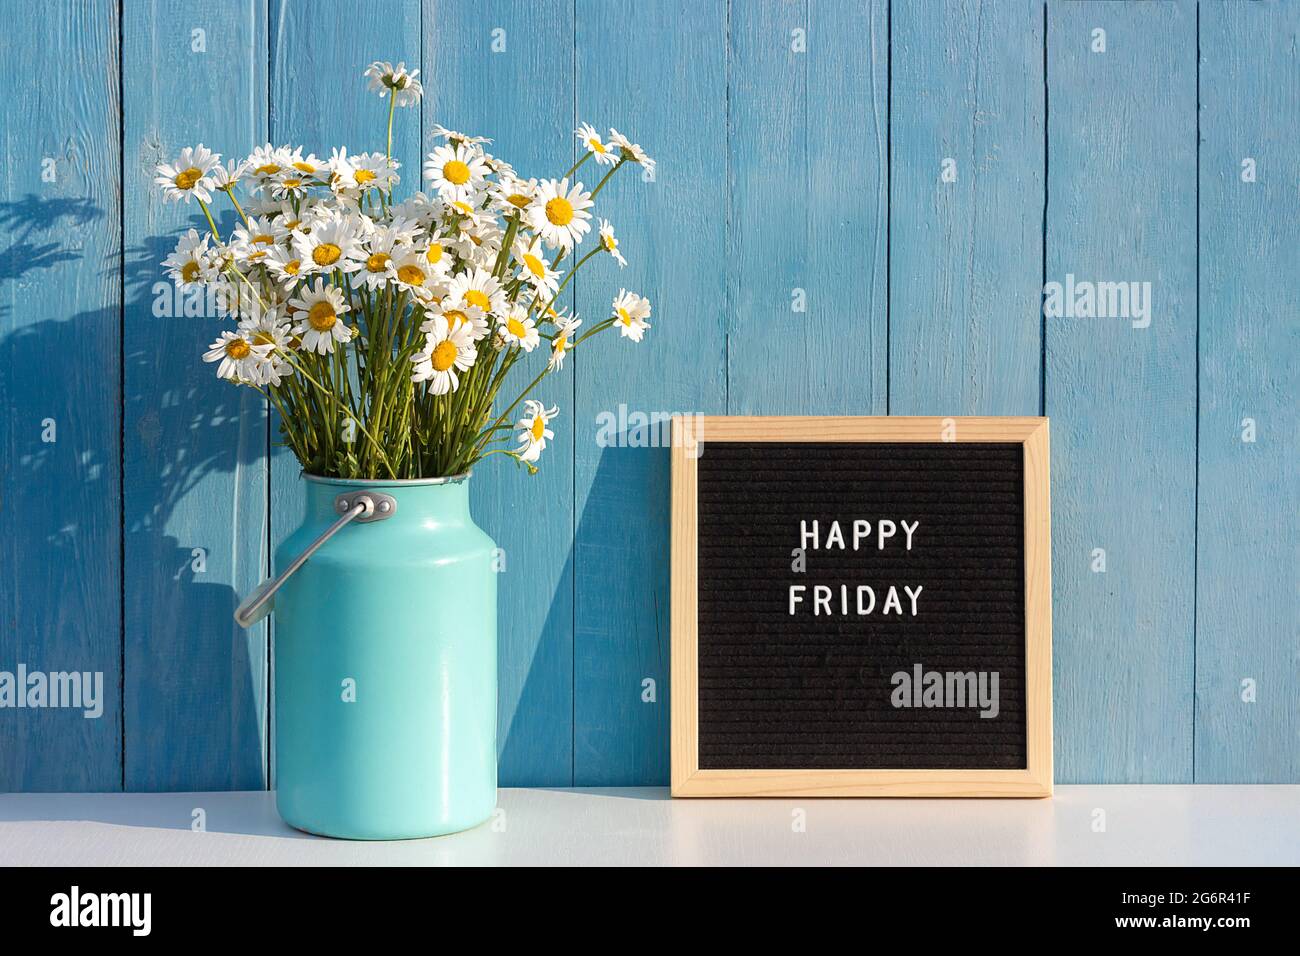 Happy Friday mots sur panneau noir de lettres et bouquet de fleurs de camomille sur table contre un mur en bois bleu. Concept Bonjour vendredi. Banque D'Images